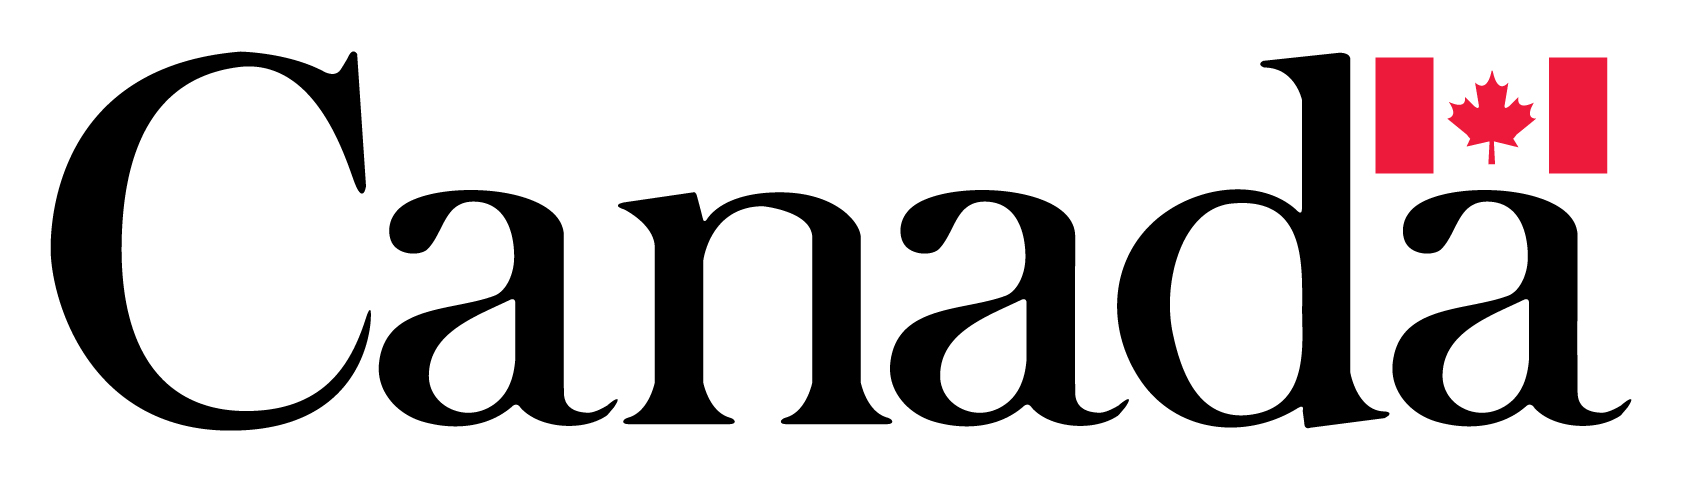 Canada - Logo